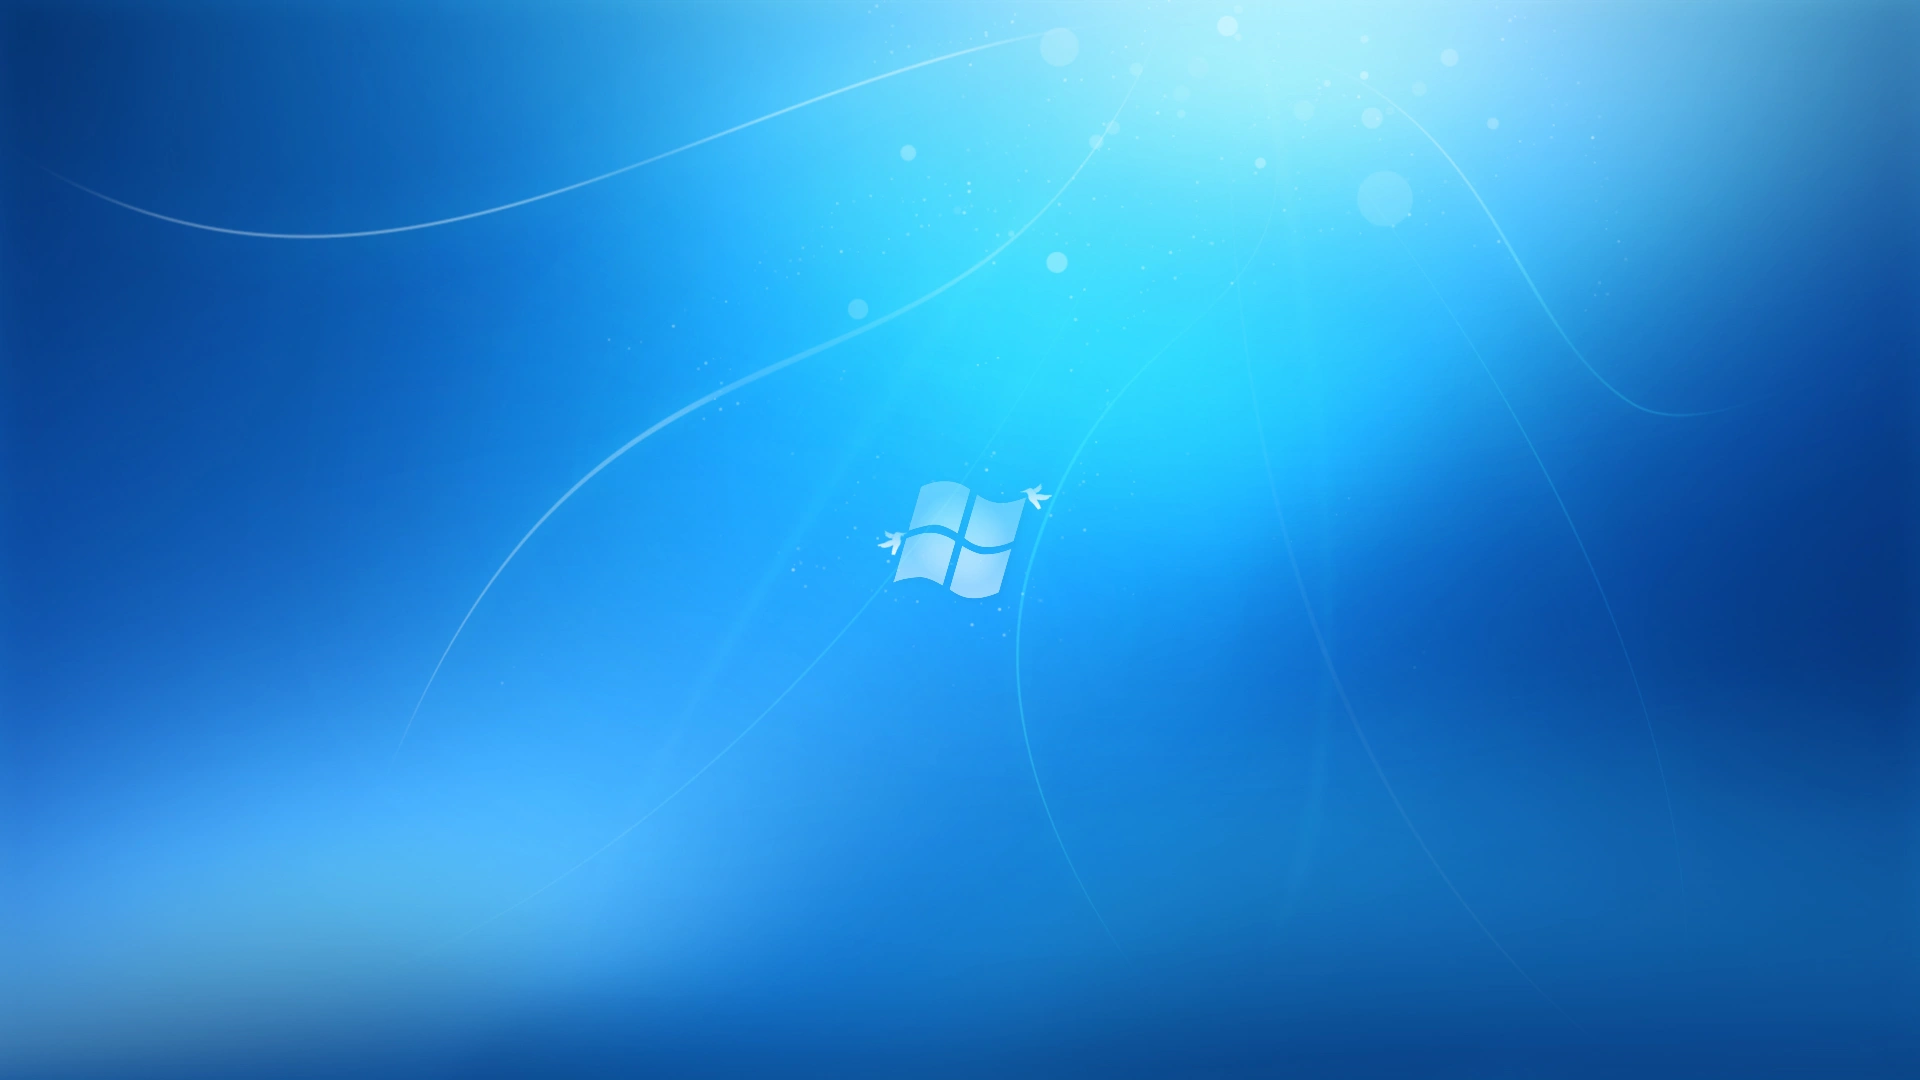 Windows 7 Blue 1080p HD3449415895 - Windows 7 Blue 1080p HD - Windows, blue, Alternate, 1080p